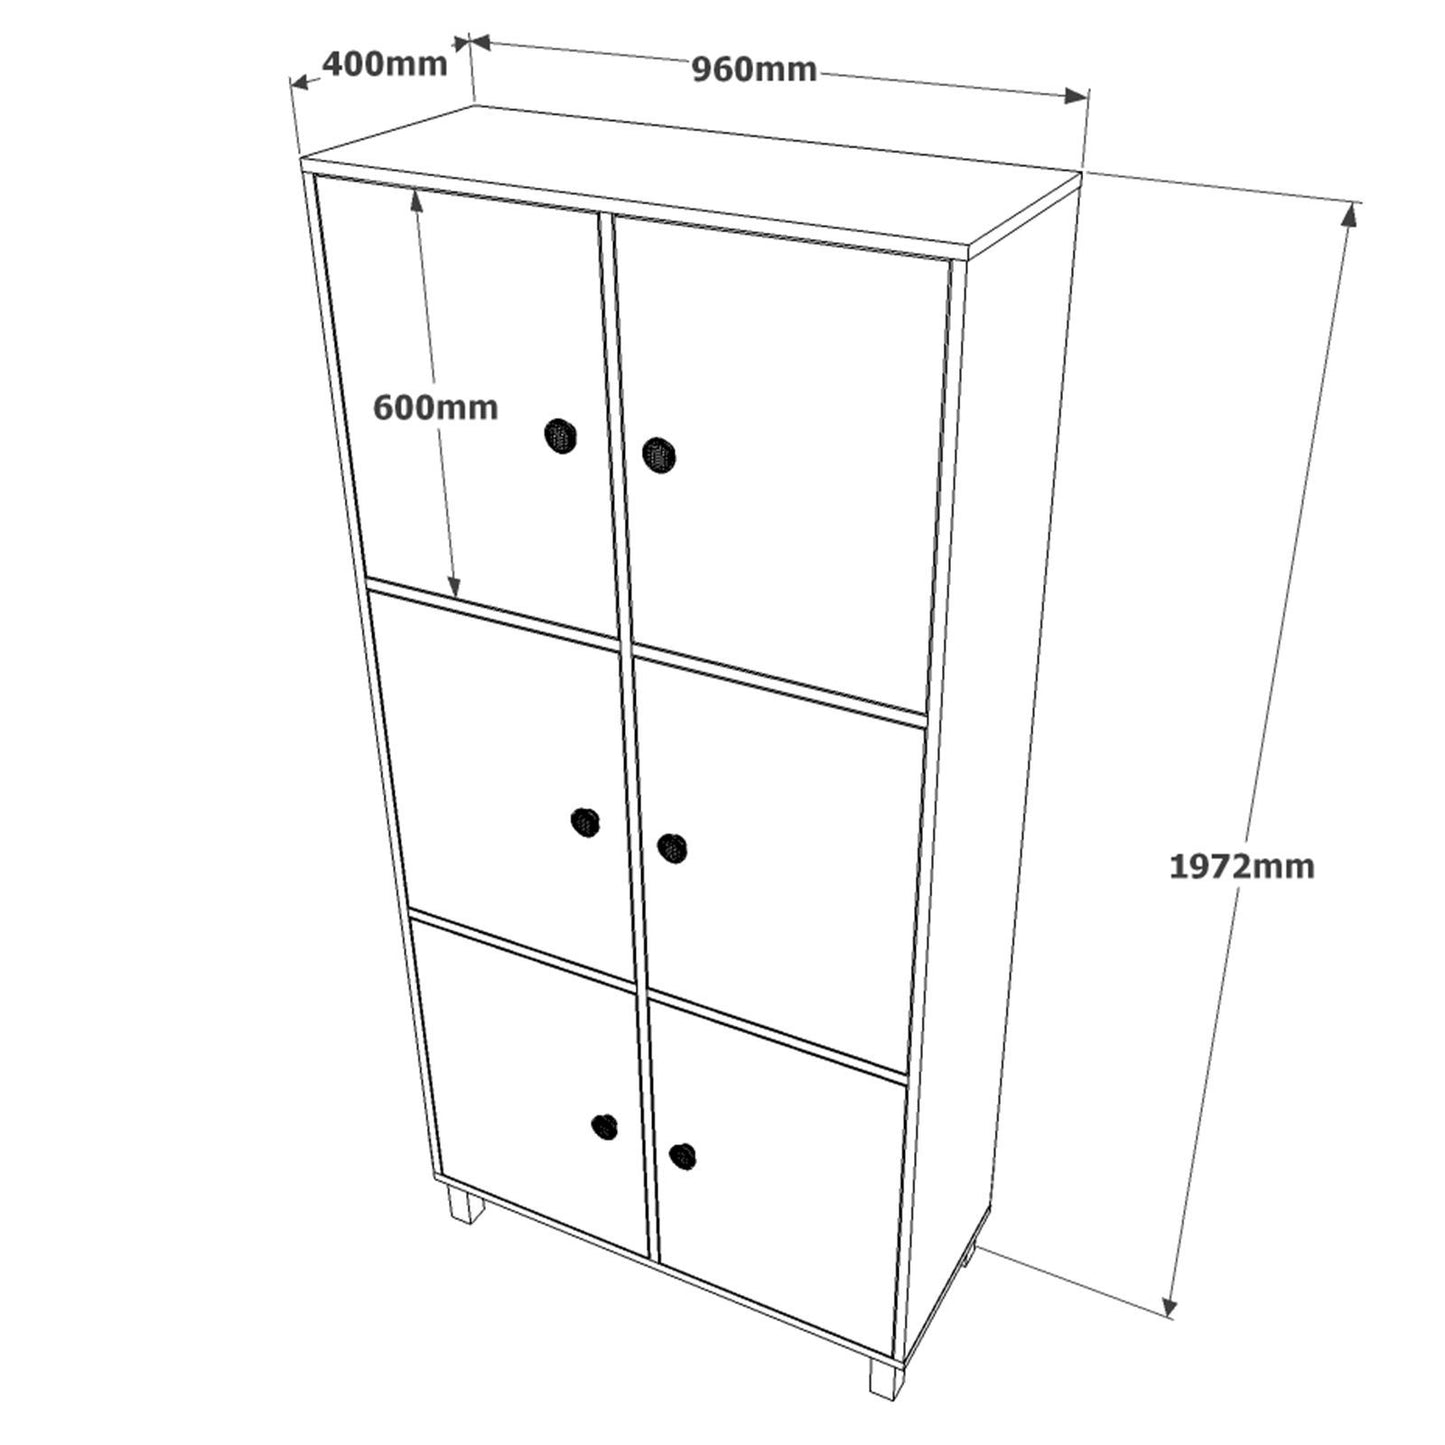 VL61-338 - Multi Purpose Cabinet